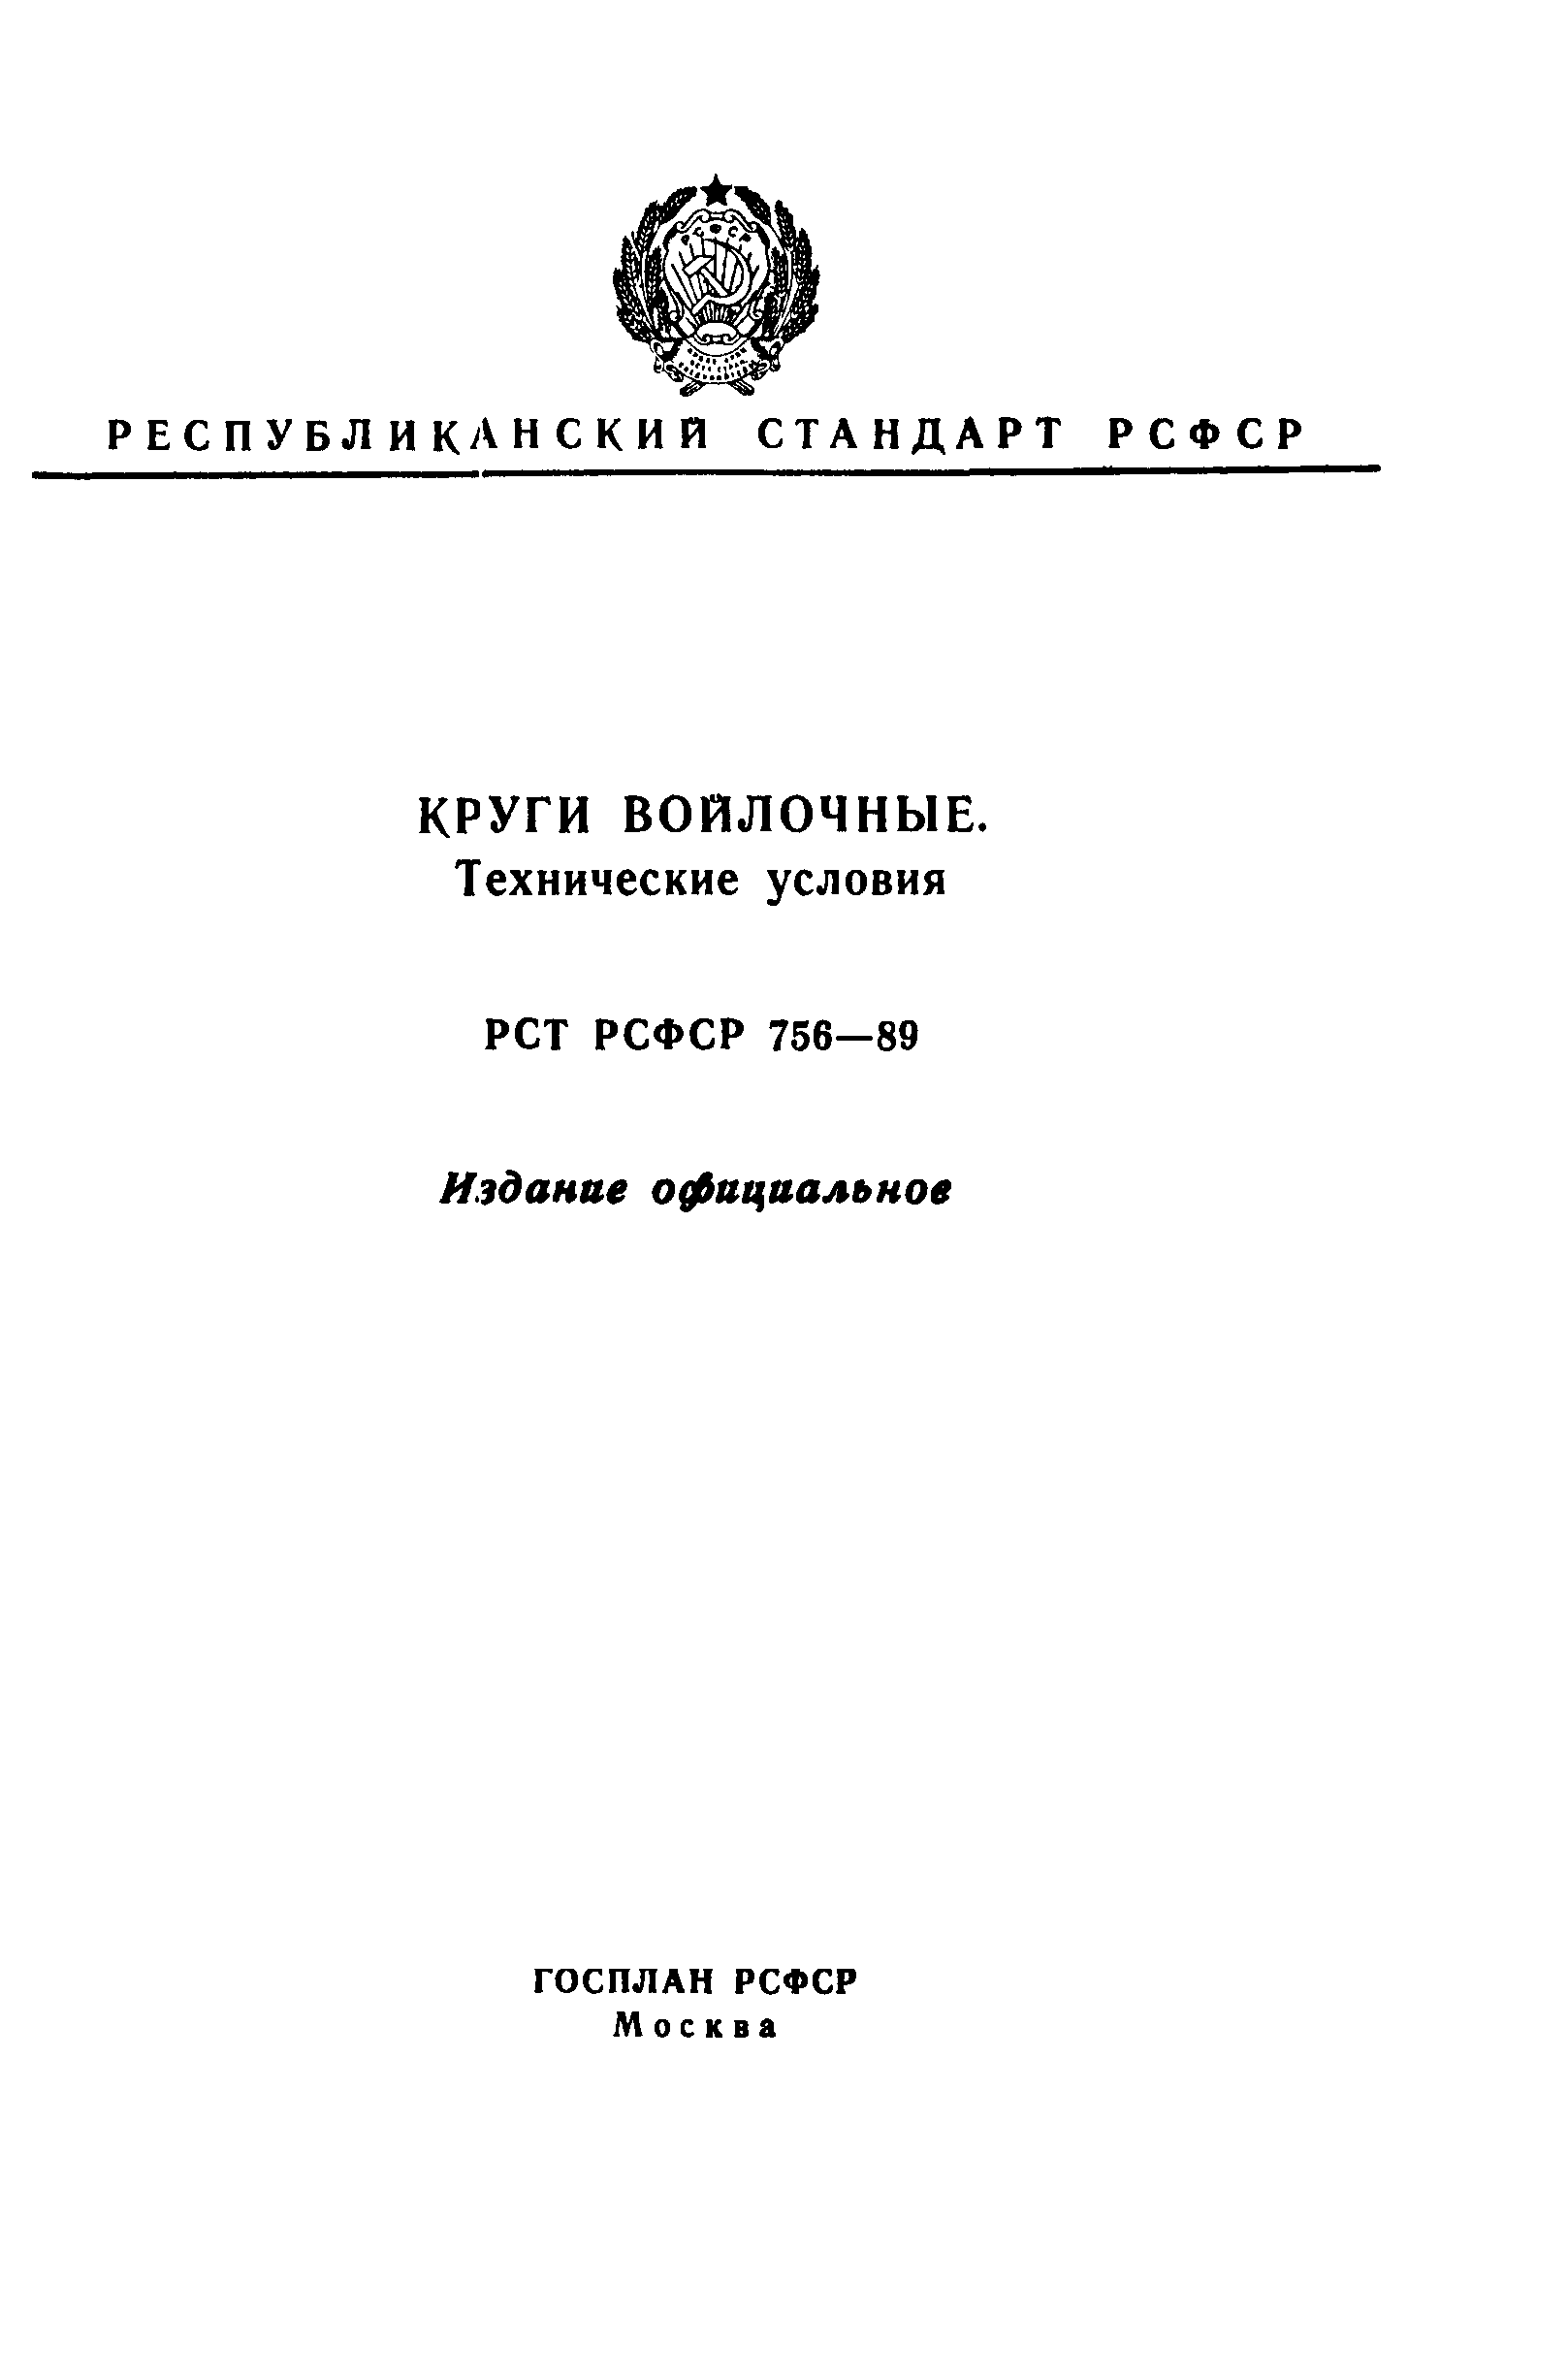 РСТ РСФСР 756-89